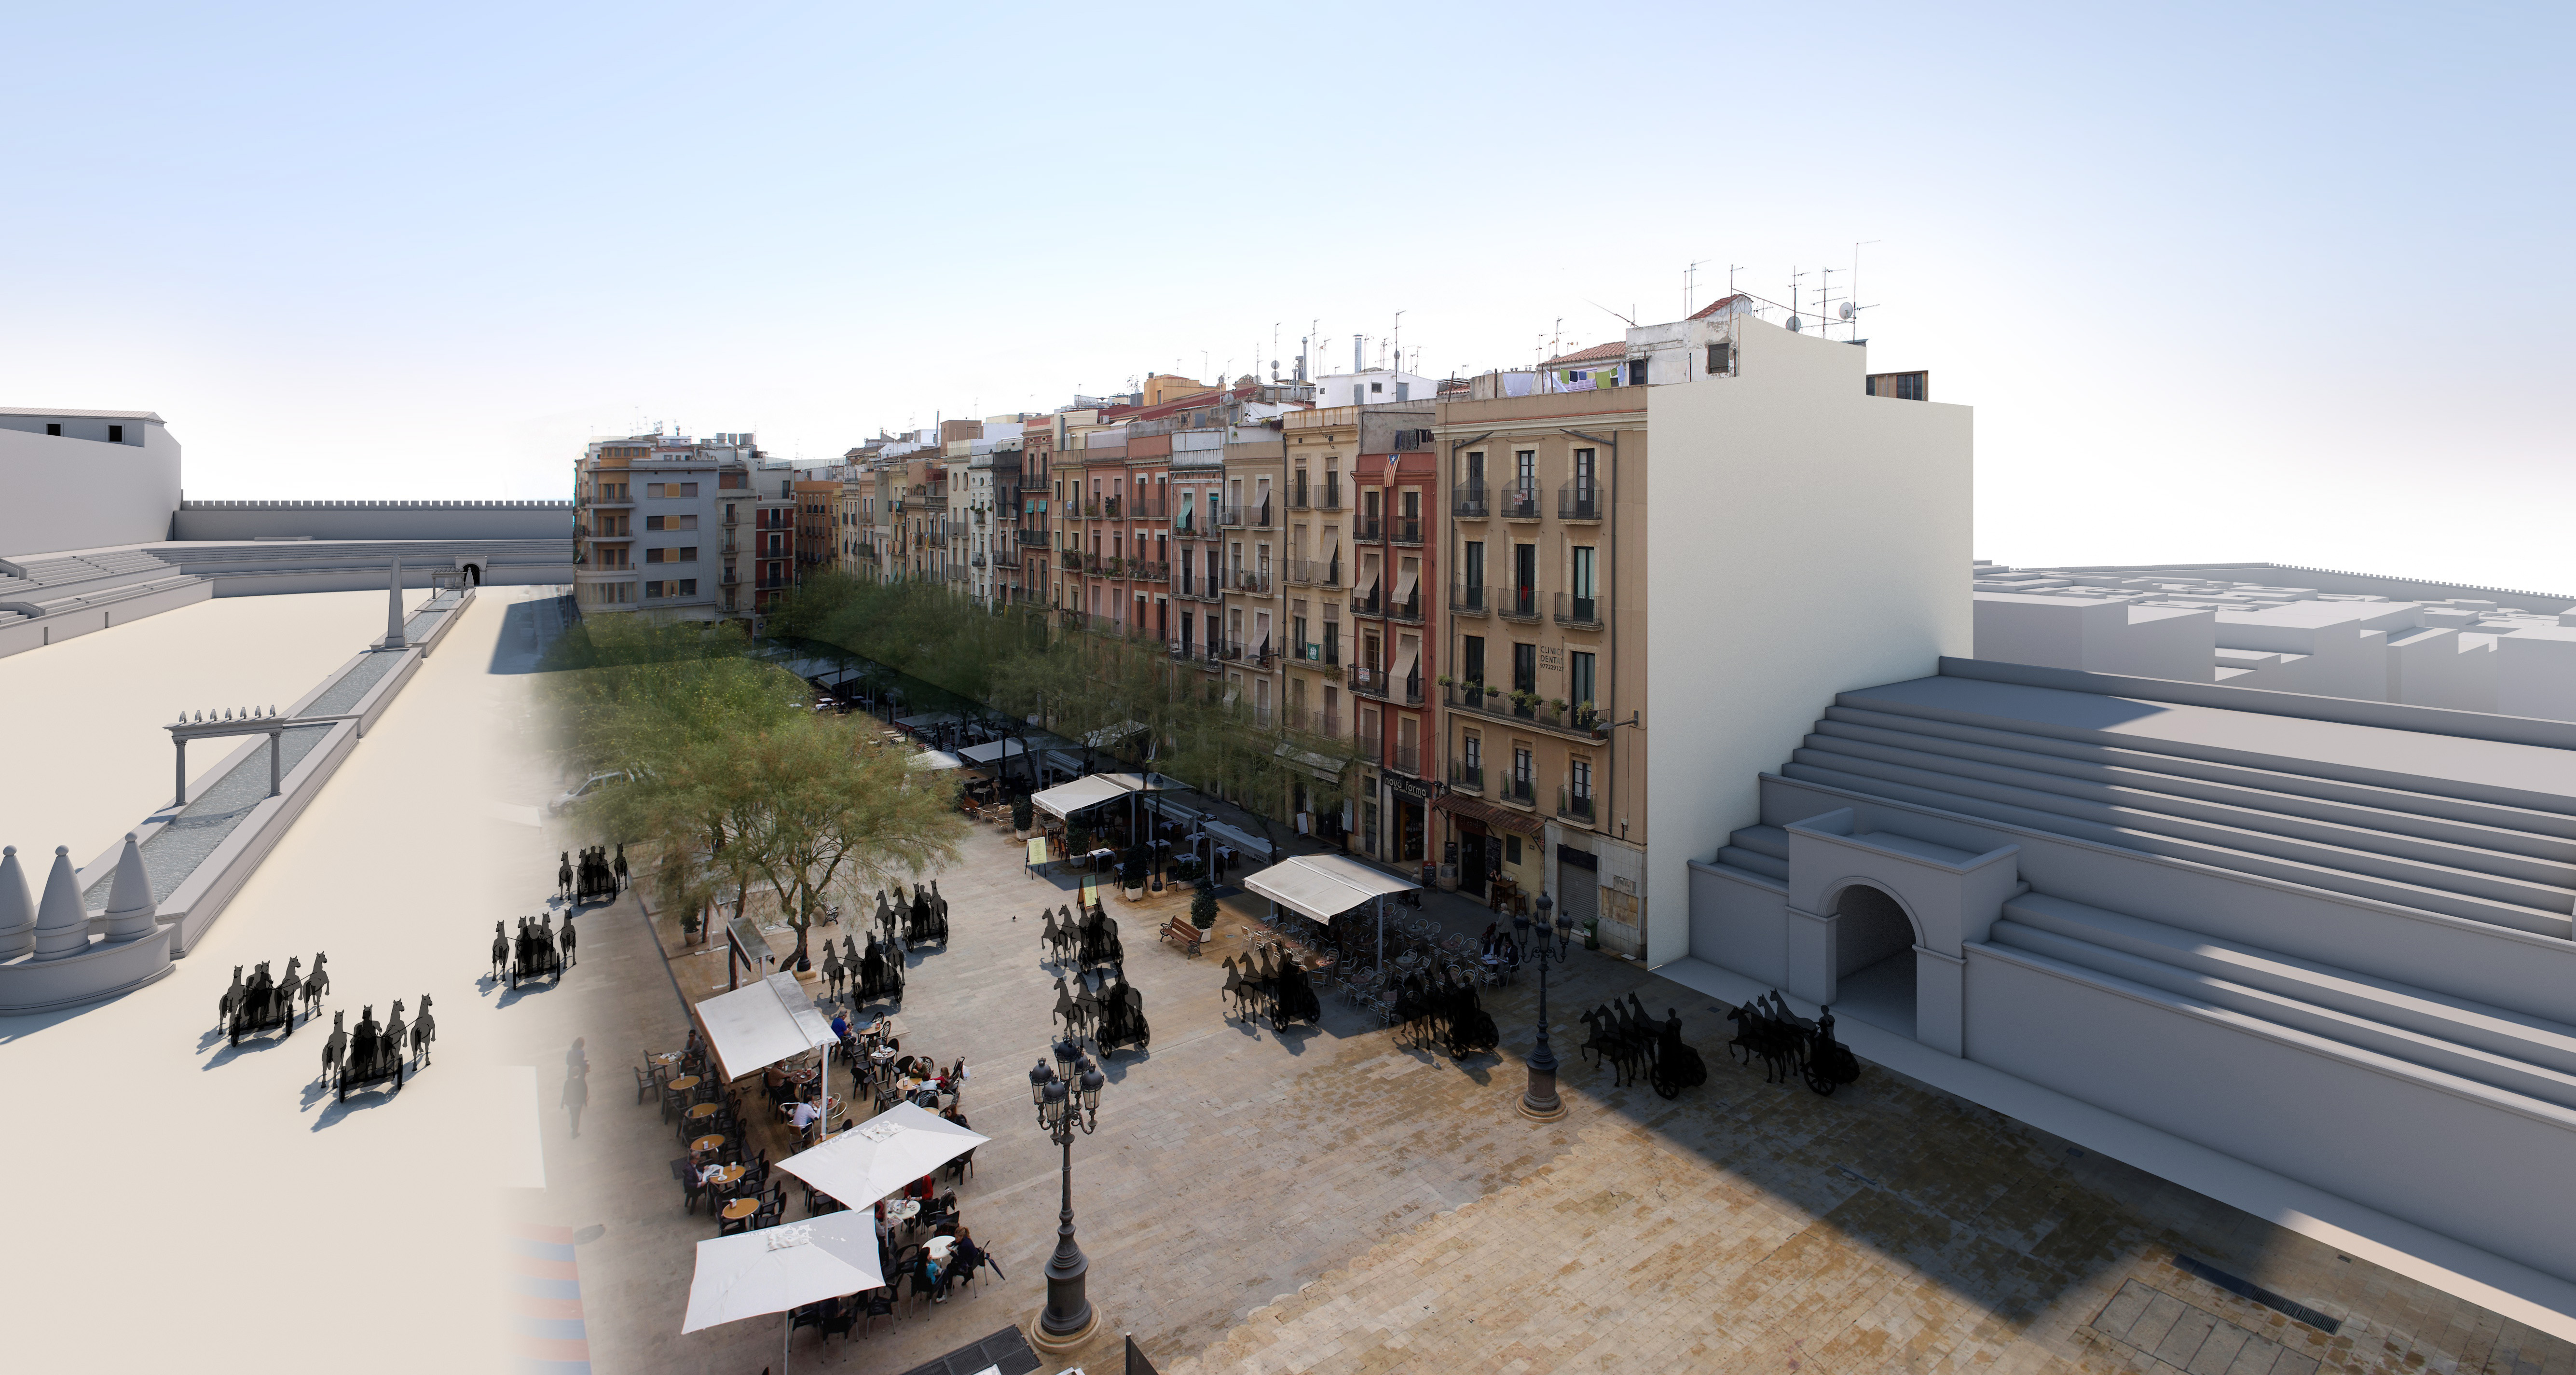 Reconstrucció virtual de les restes del circ i d'una cursa de carros al damunt de l'actual Plaça de la Font de Tarragona (Fotografia: Pepo Segura. Restitució i fotomuntatge: Ferran Gris / SETOPANT)